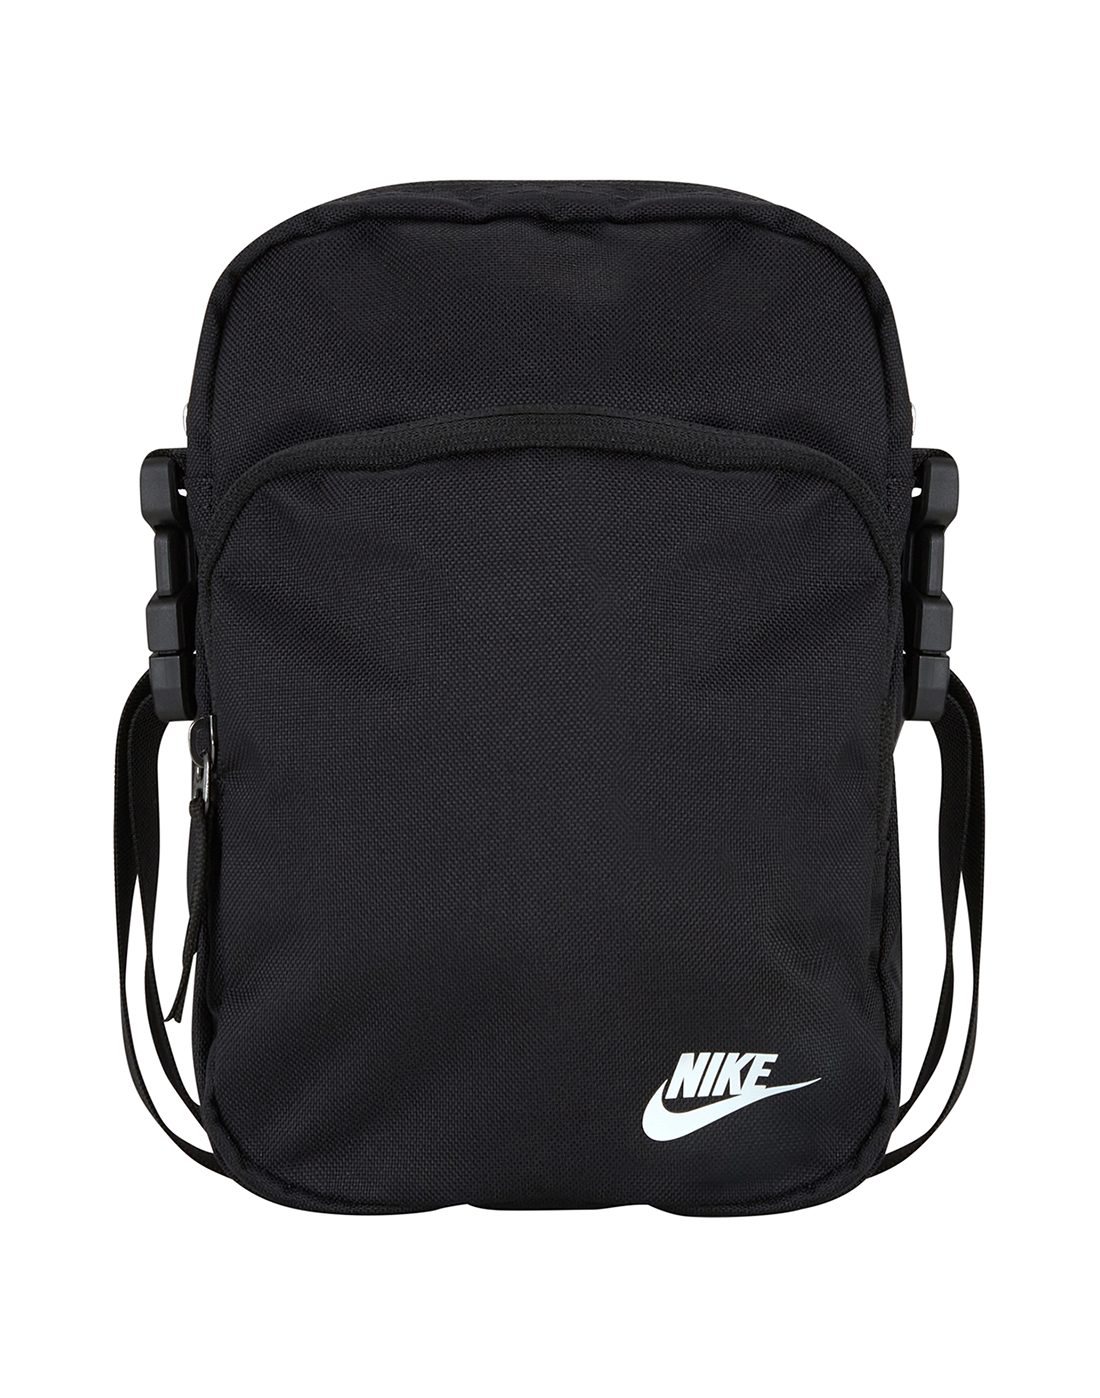 Nike Mens Heritage Bag - Black | Life Style Sports EU